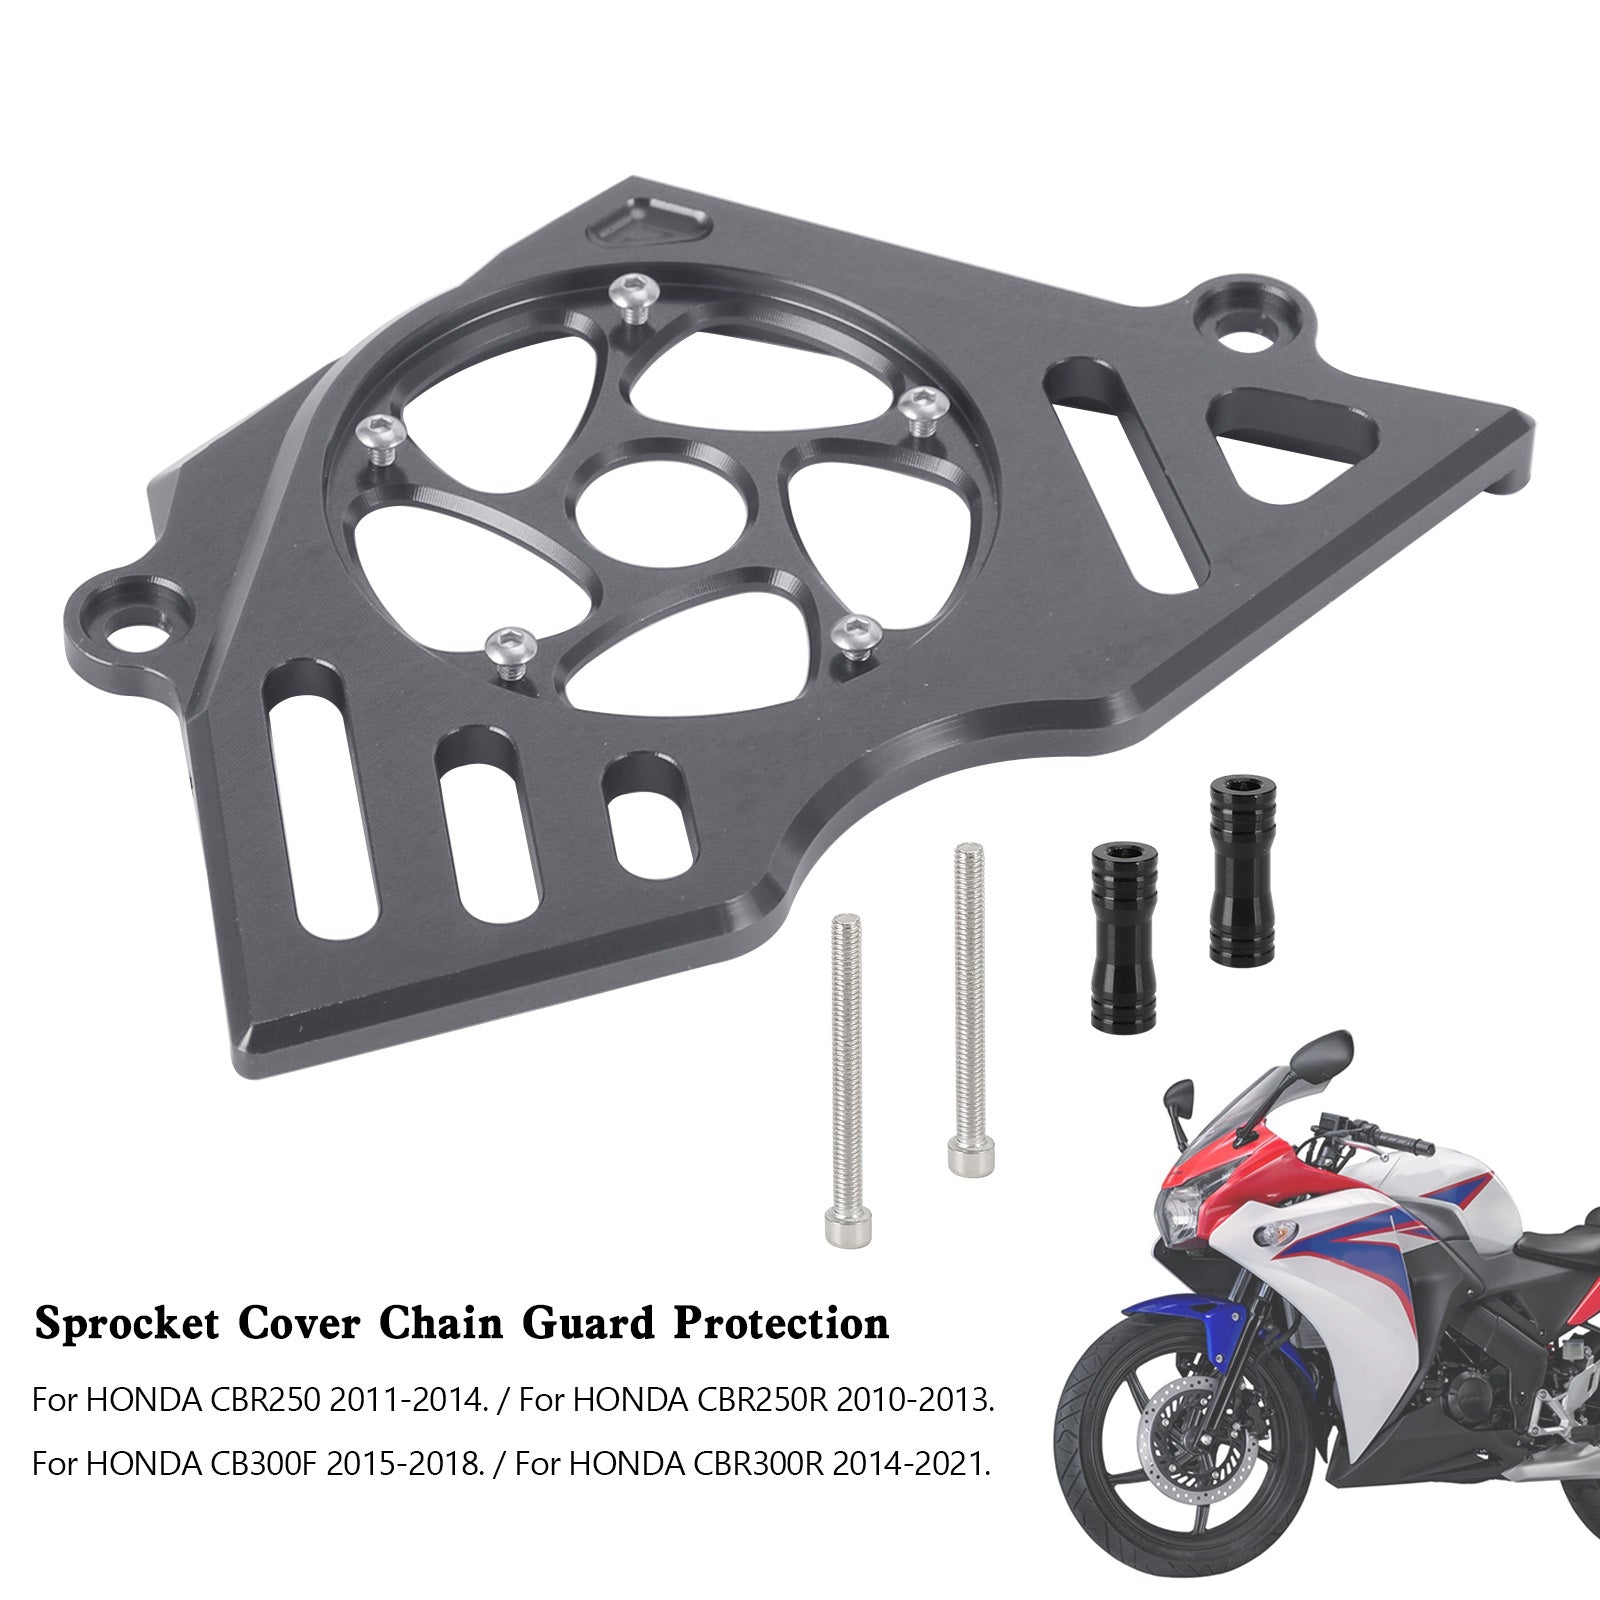 Honda CBR250R CBR300R CB300F Front Sprocket Cover Chain Guard